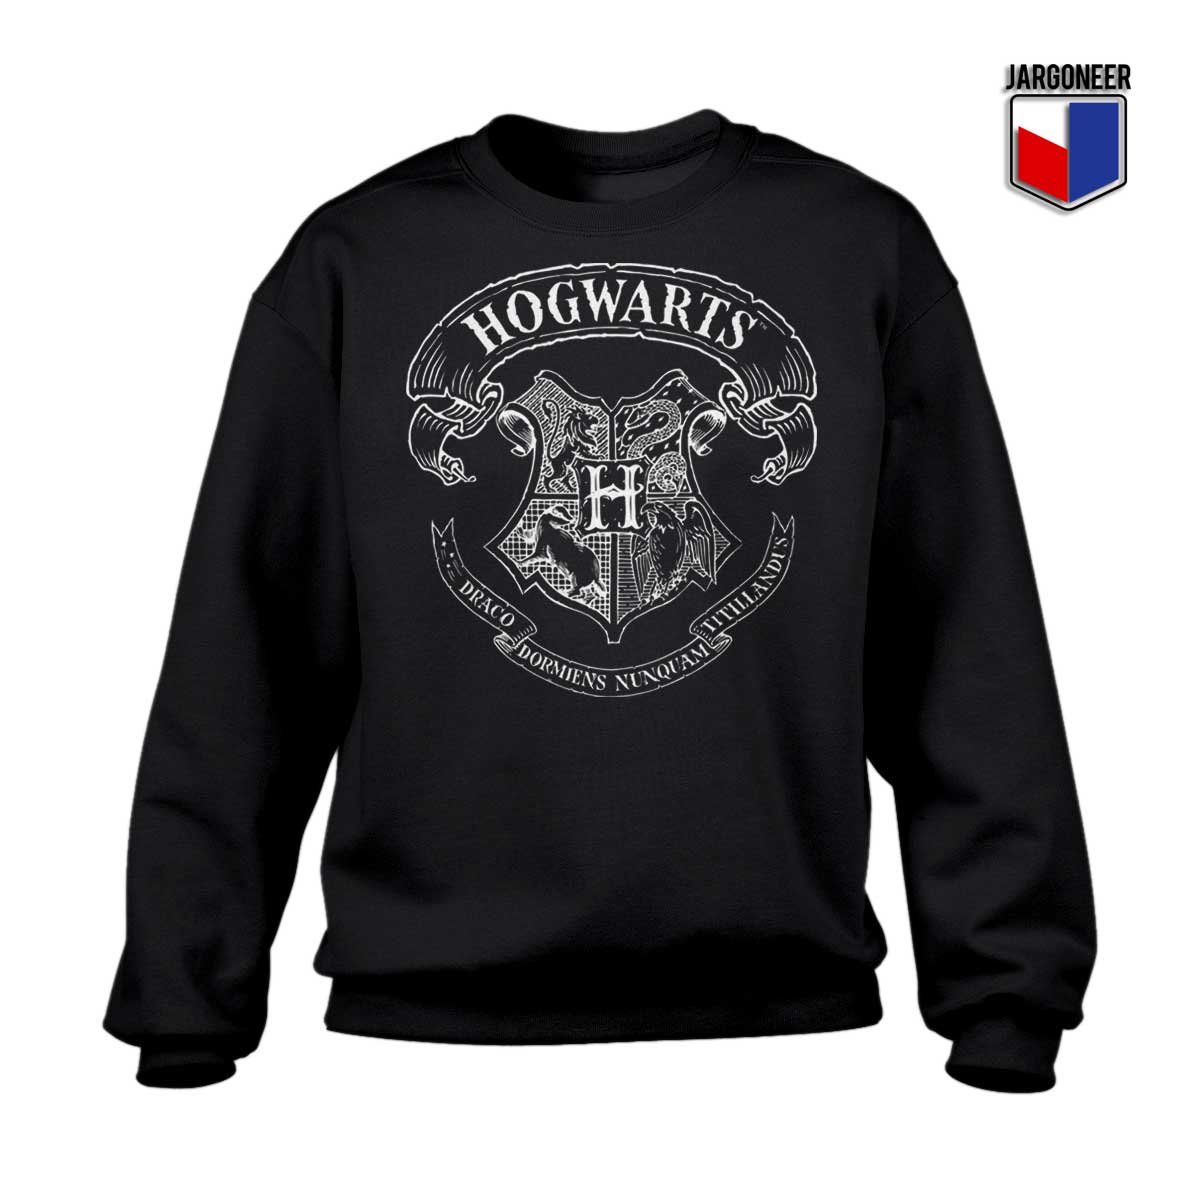 Harry Potter Hogwarts Sweatshirt - Shop Unique Graphic Cool Shirt Designs